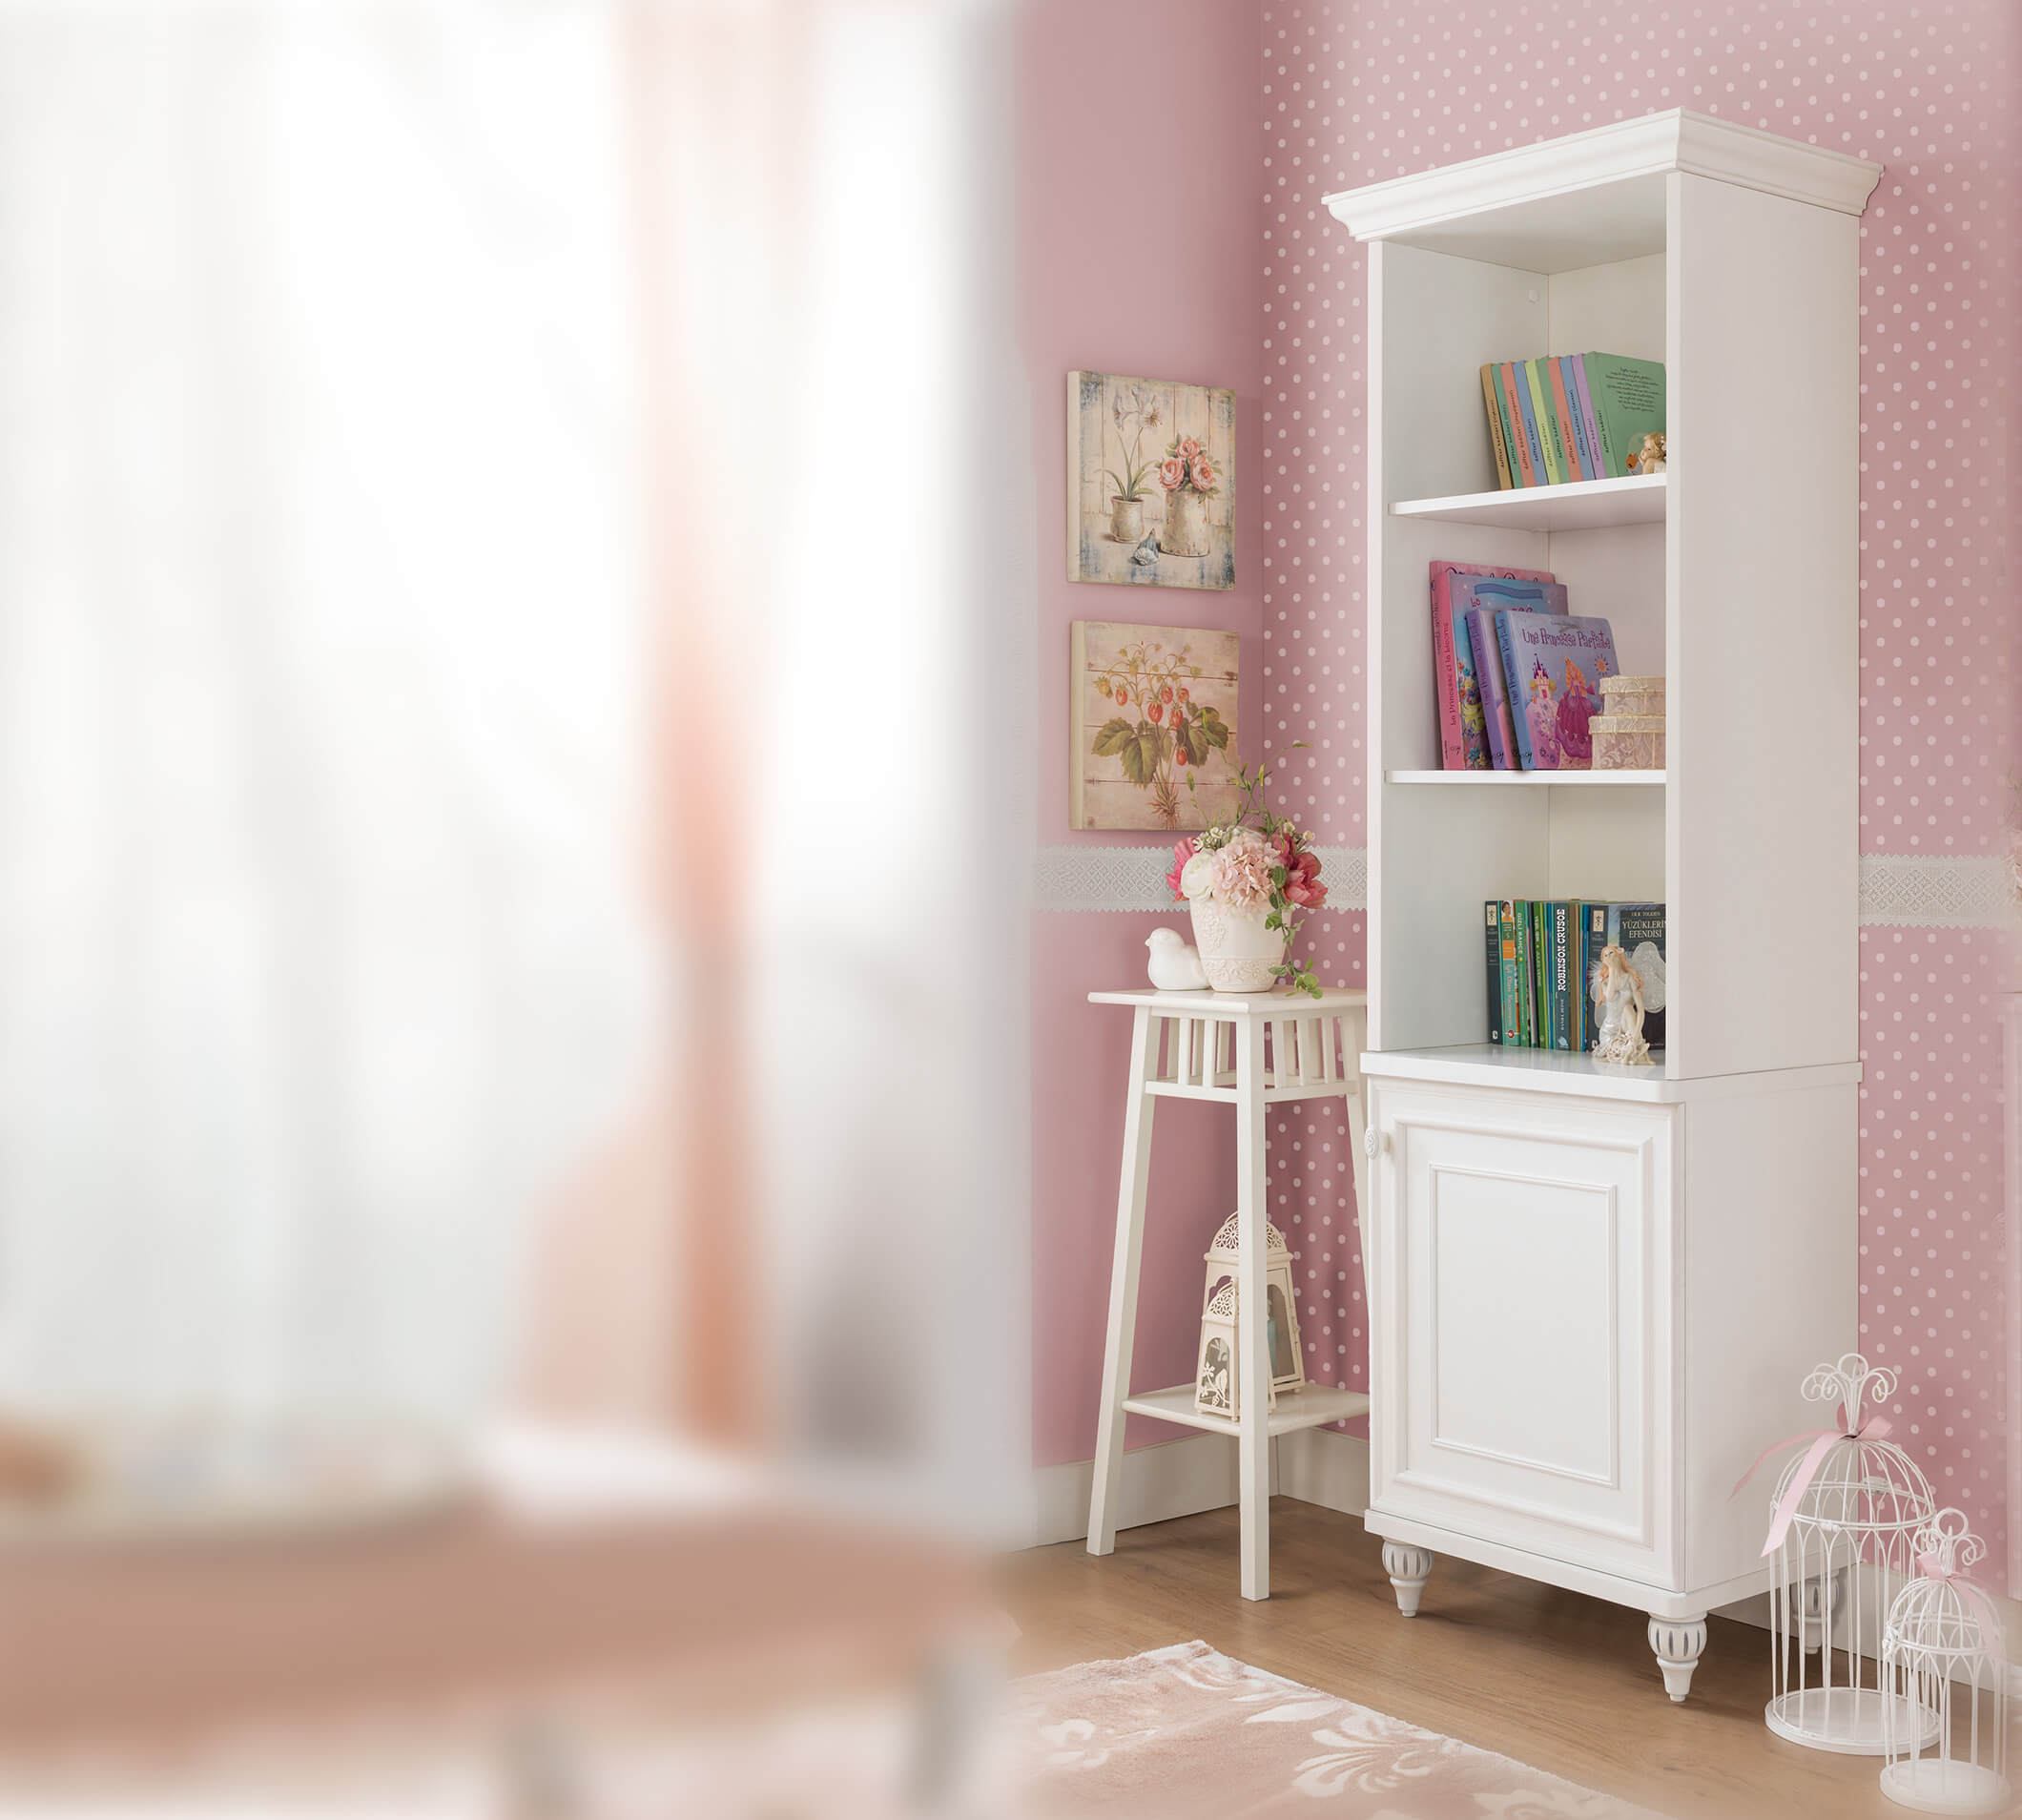 Cilek Romantica witte smalle boekenkast meisjeskamer kopen, lange bijzetkast wit, smalle witte boekenkast kopen, meisjeskamer prinsessenkamer inspiratie, kindermeubels